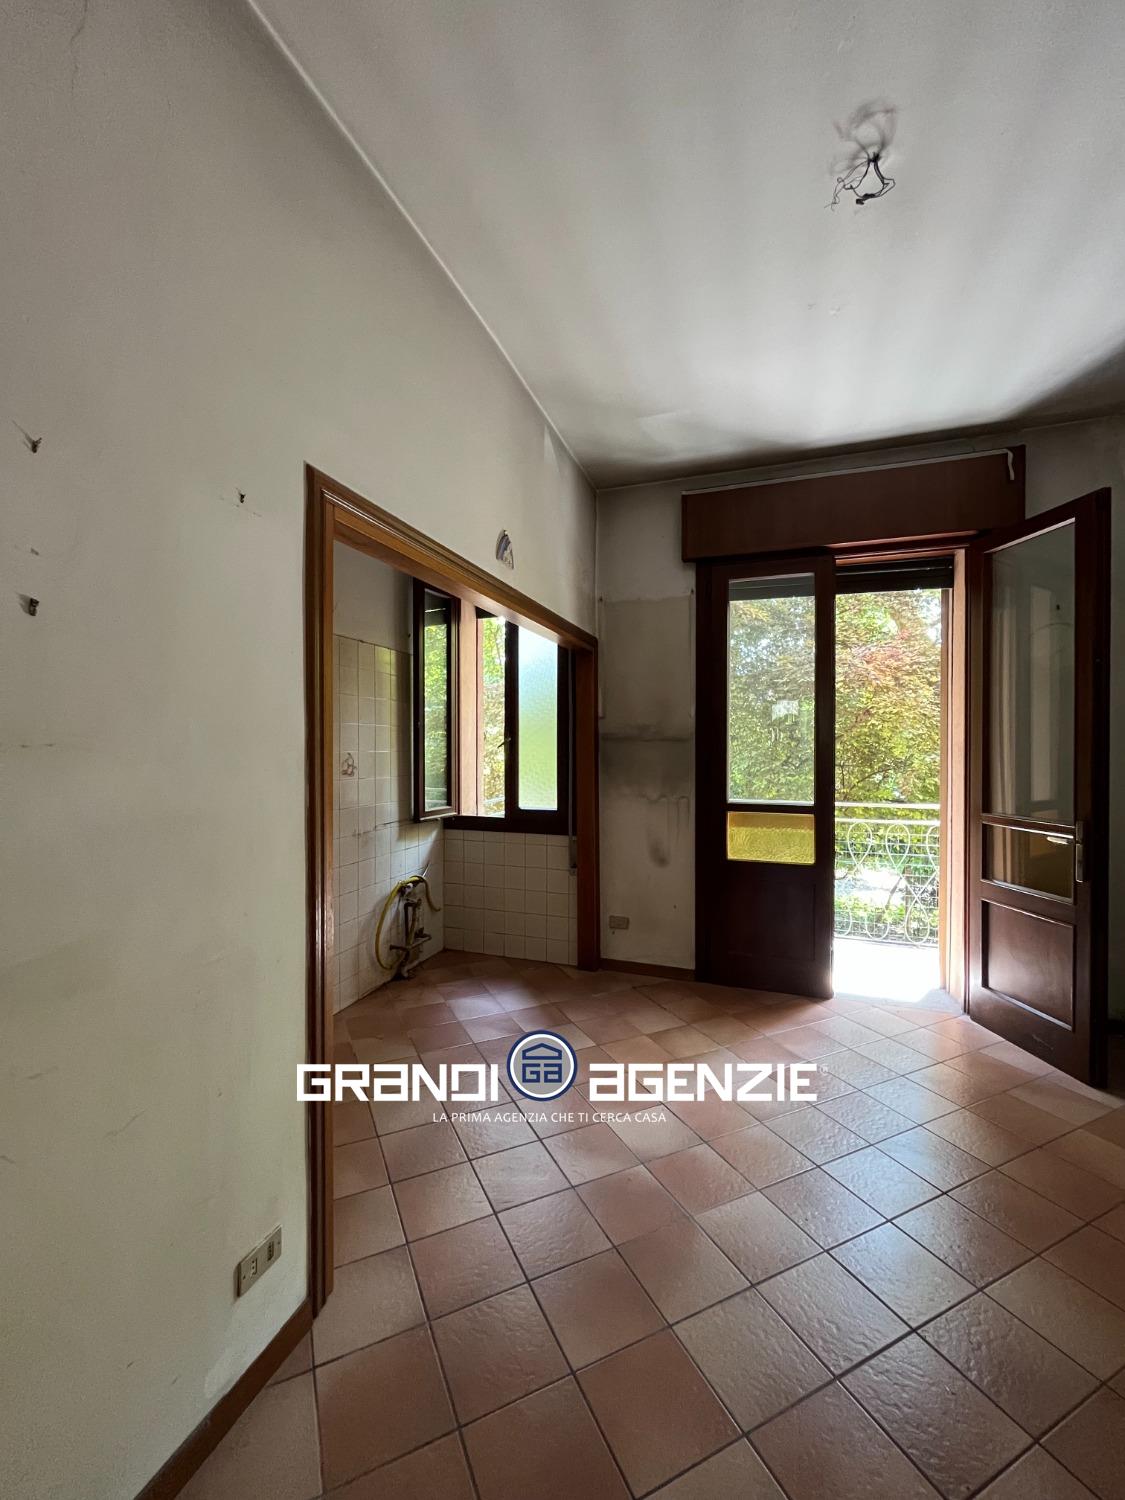 Appartamento in vendita a Treviso, 5 locali, prezzo € 205.000 | PortaleAgenzieImmobiliari.it